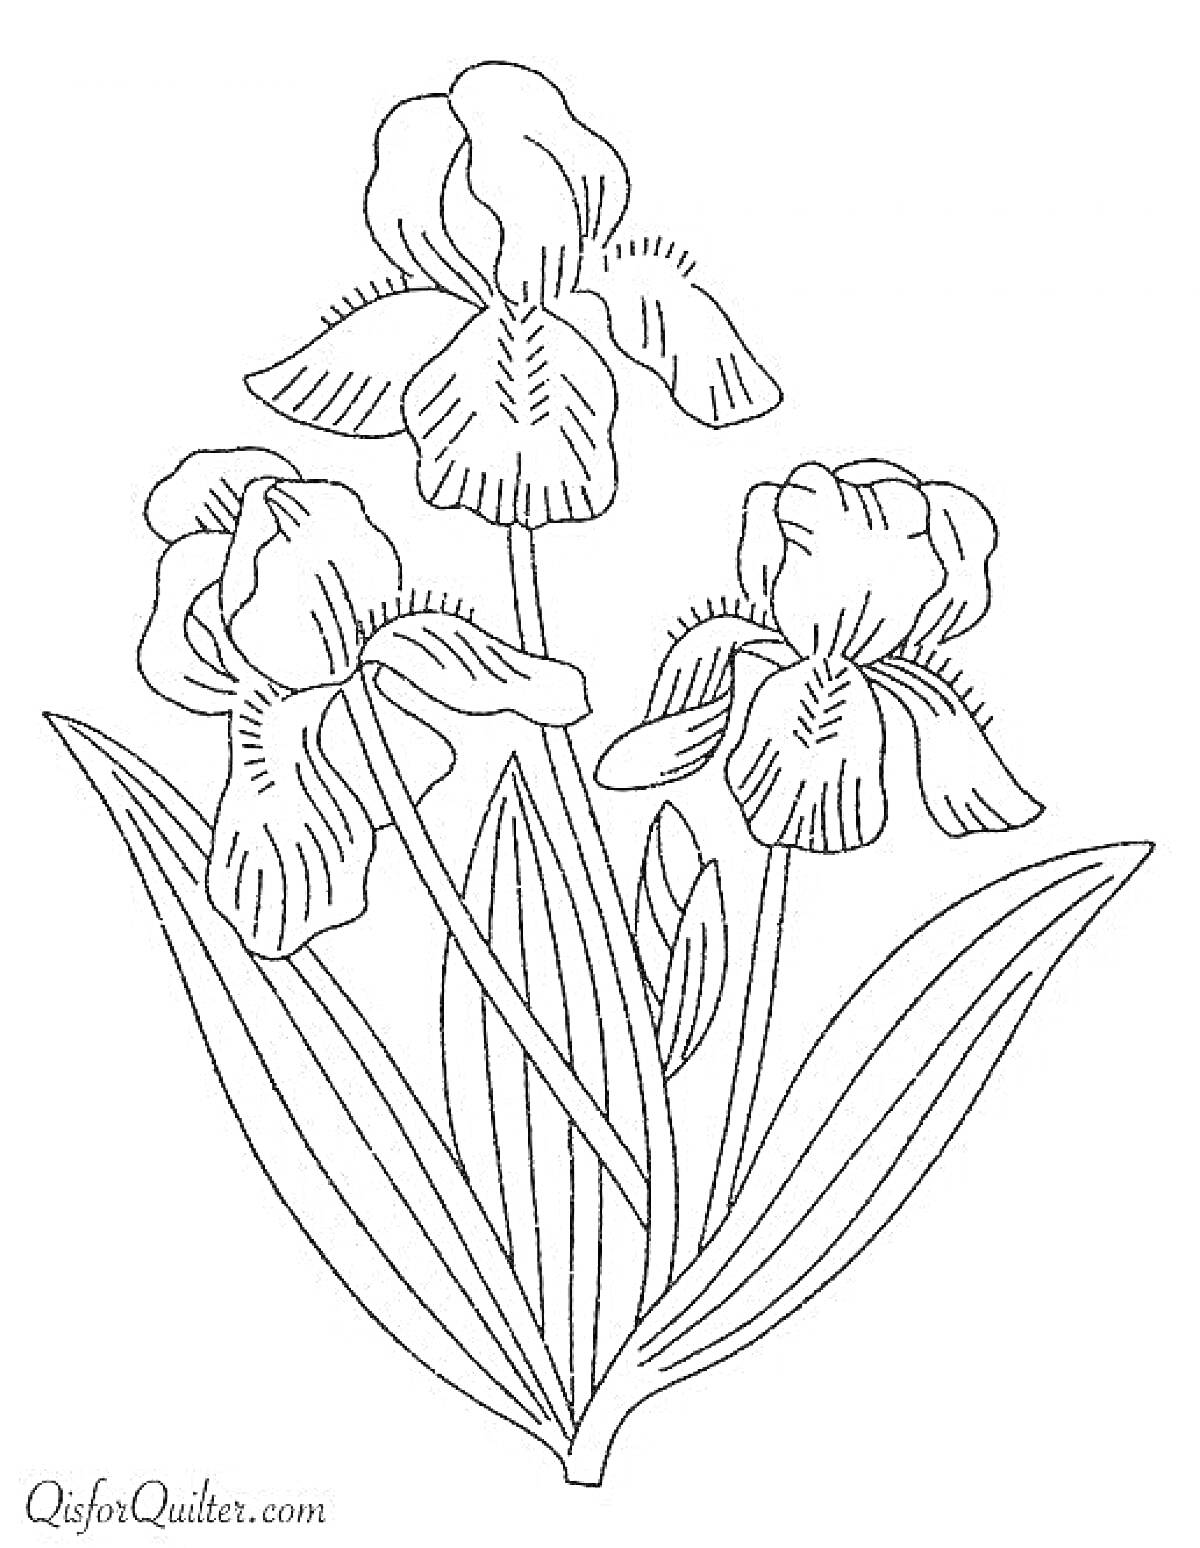 Раскраска Раскраска с изображением ирисов с цветками и листьями